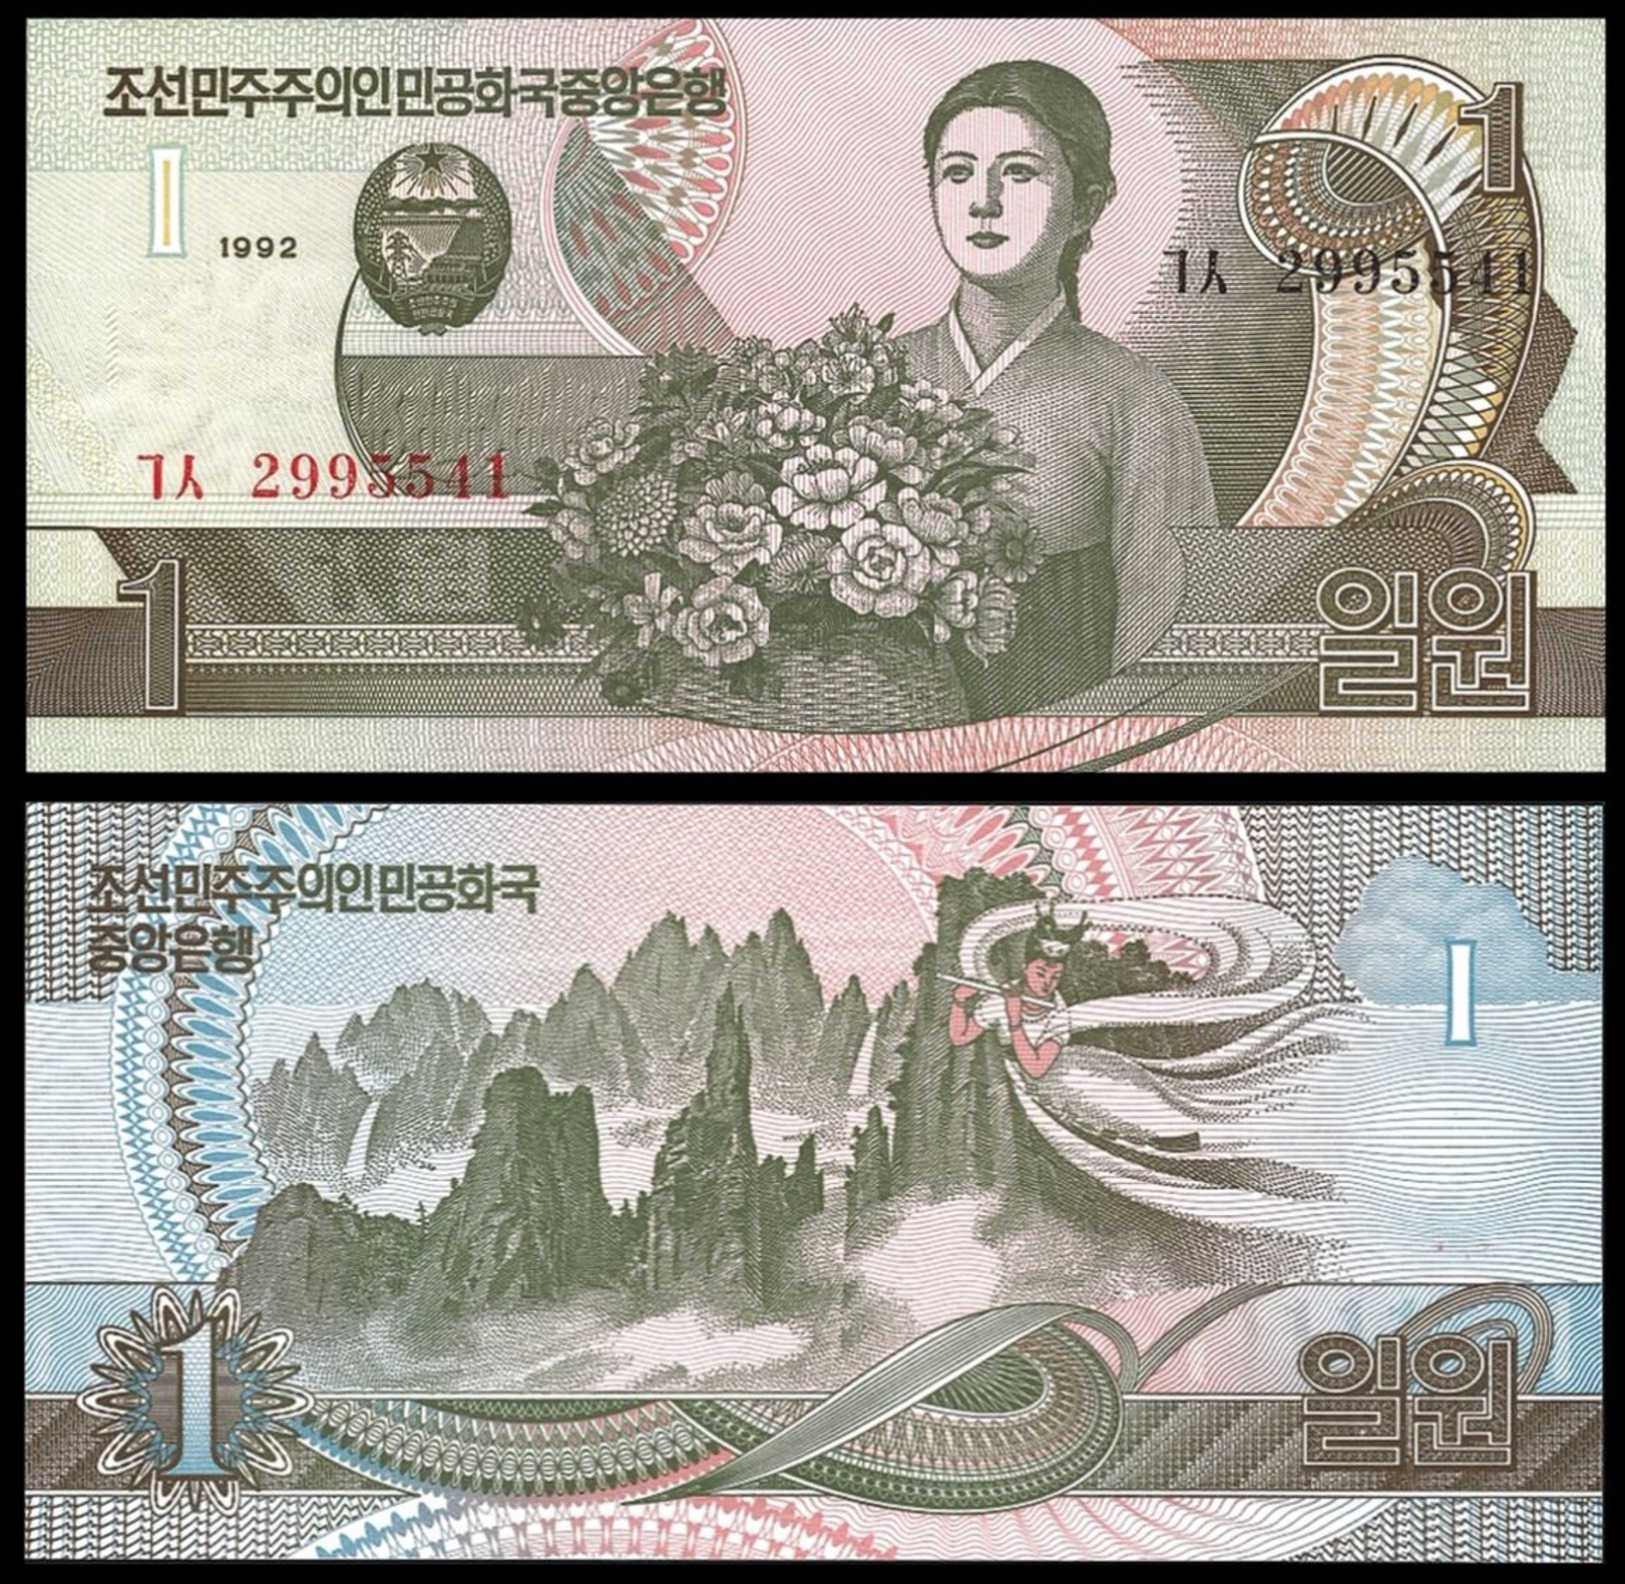 BANK OF KOREA 1 WON 1992 Pick 39 UNC - Korea, South